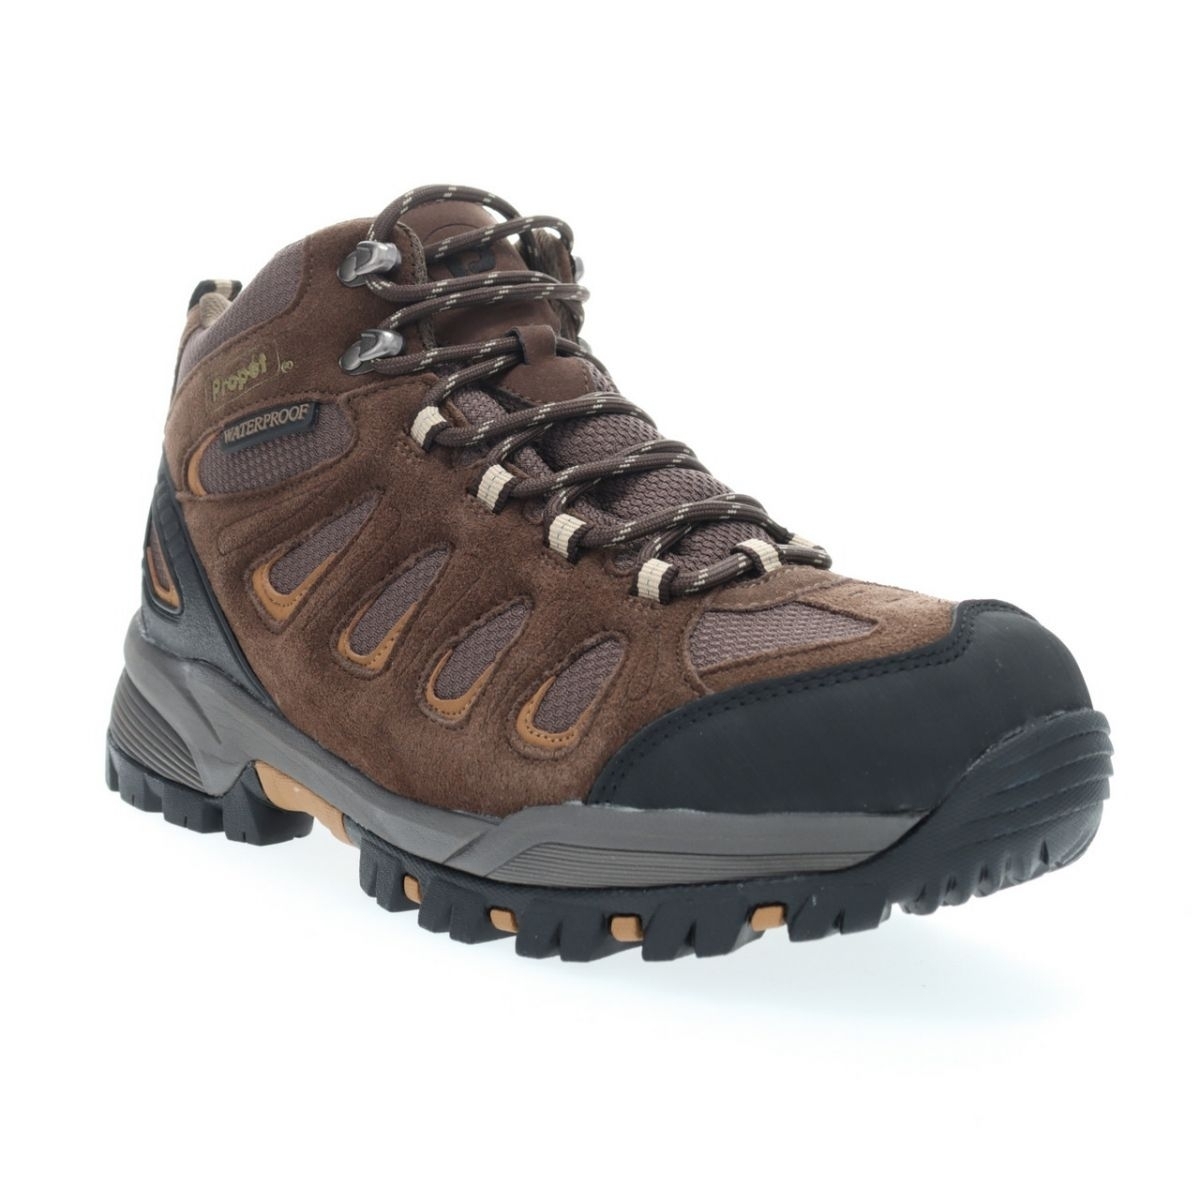 Propet Men's Ridge Walker Hiking Boot Brown - M3599BR 8 XX US Men BROWN - BROWN, 11.5 X-Wide